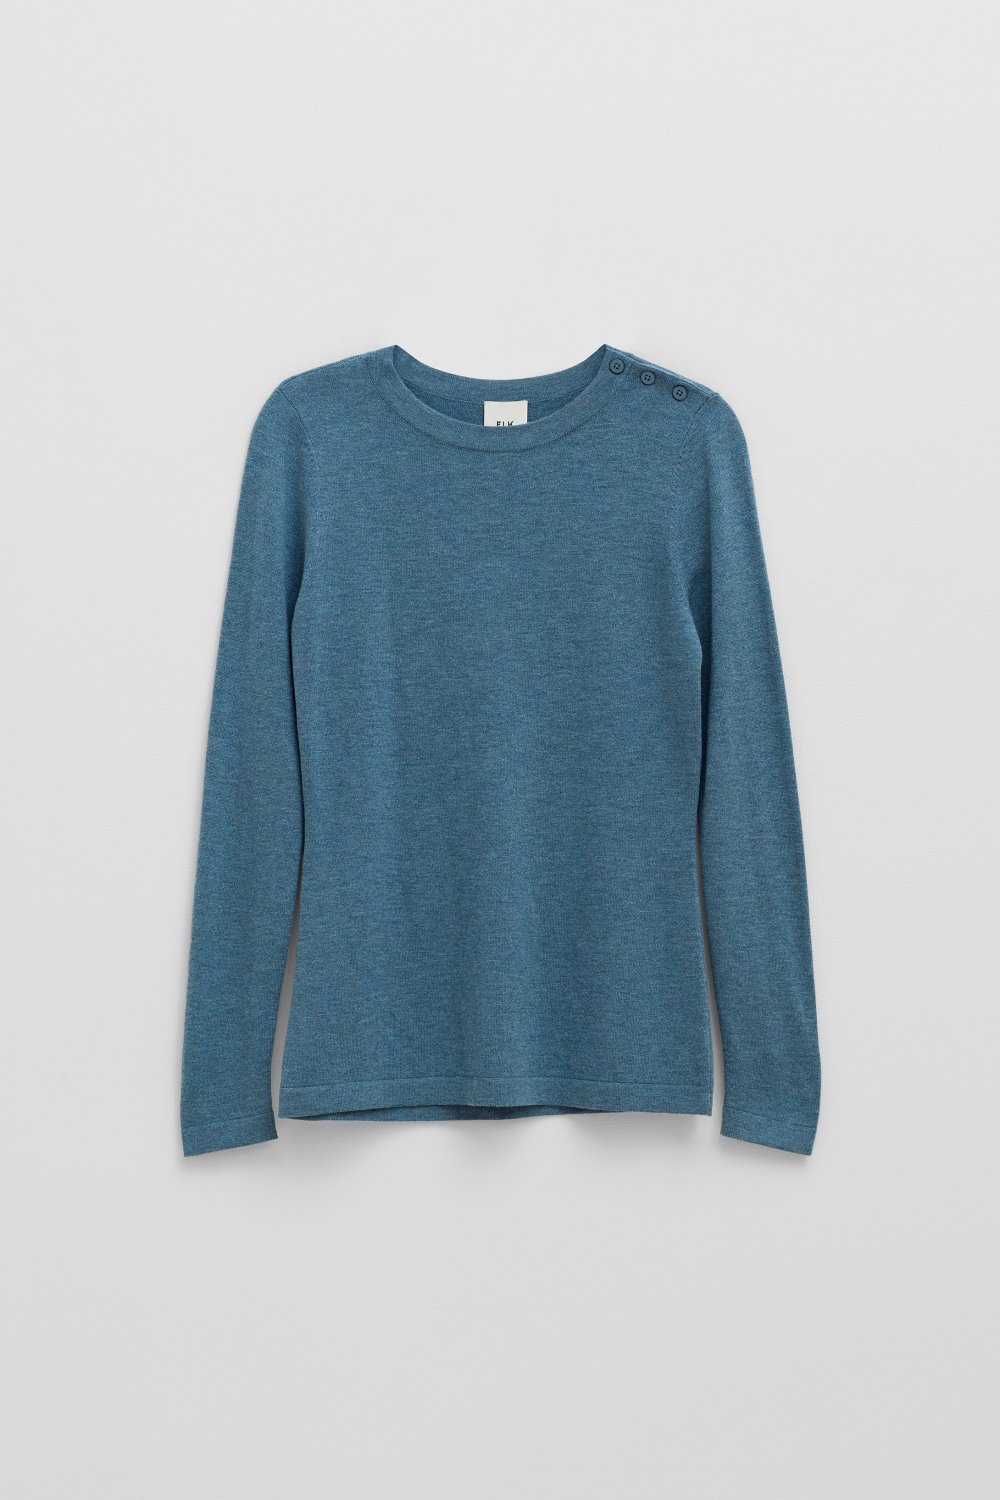 elk-kevyt-sweater-citadel-blue 5